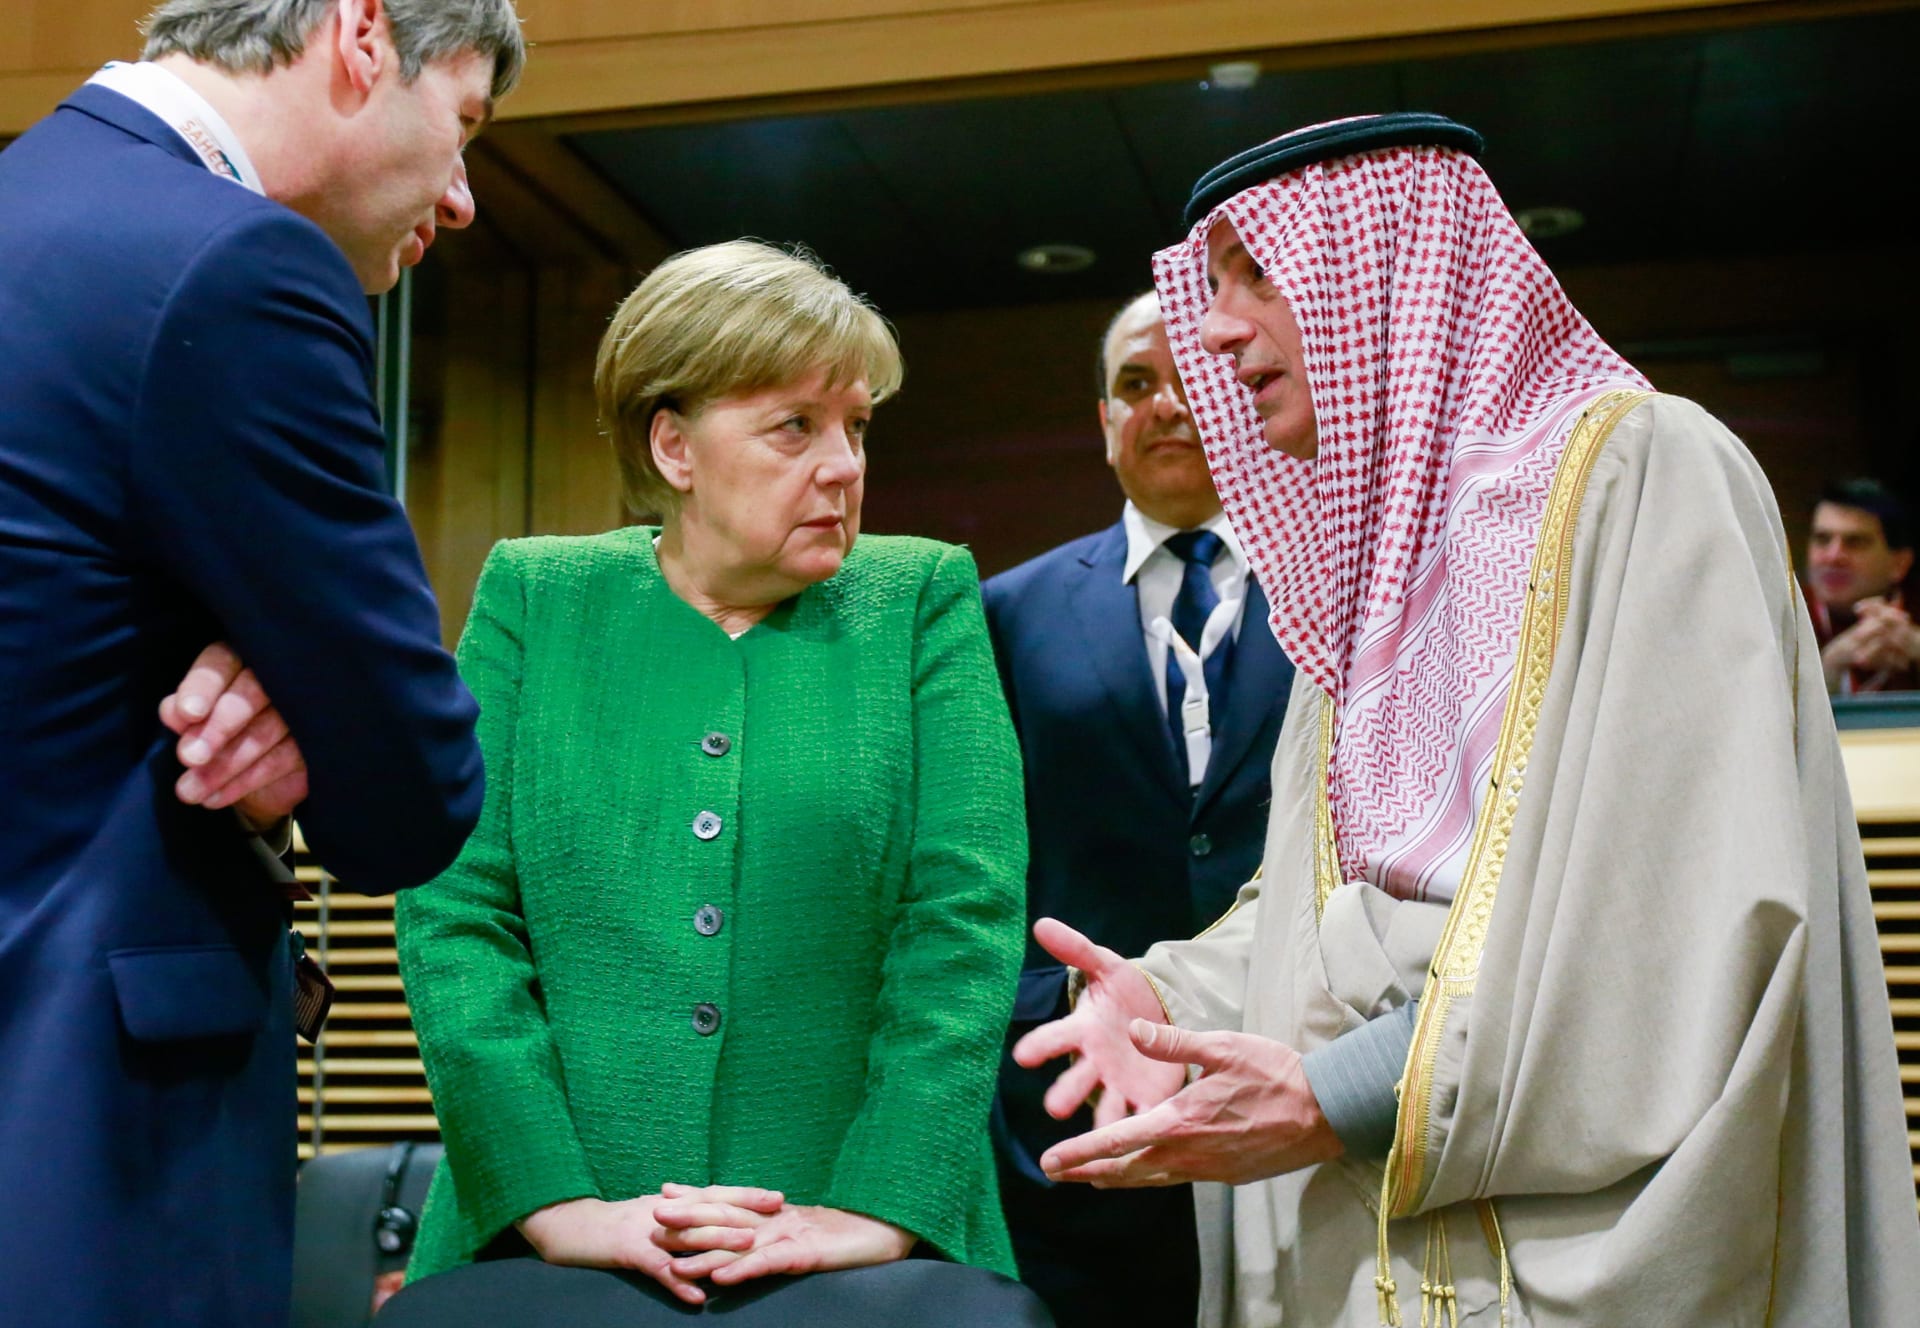 سلمان الأنصاري يكتب لـCNN: العلاقة بين السعودية وألمانيا لا يجب أن توضع بمرمى قليلي الخبرة